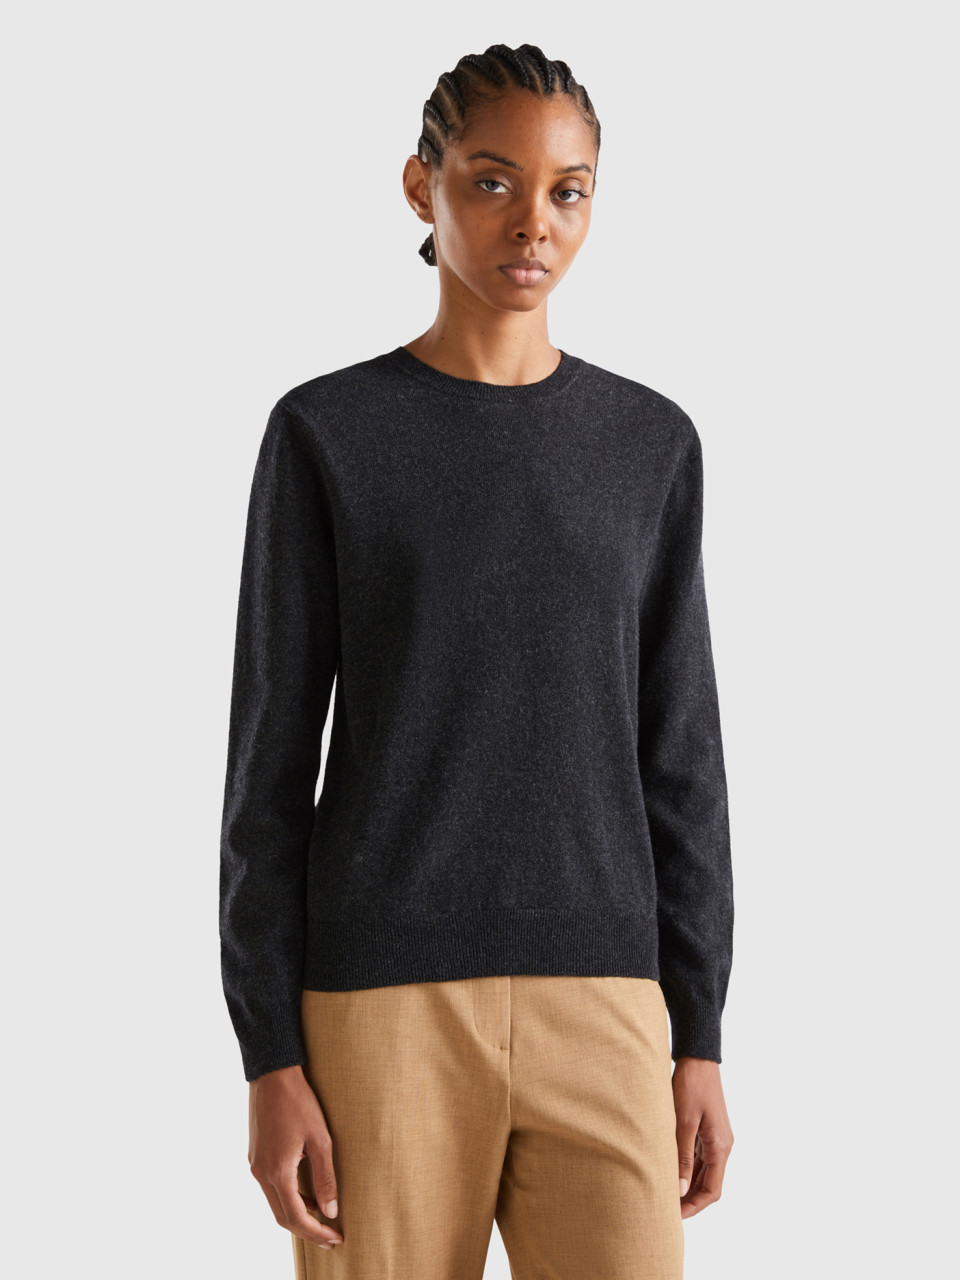 Benetton, Charcoal Gray Crew Neck Sweater In Pure Merino Wool, Dark Gray, Women